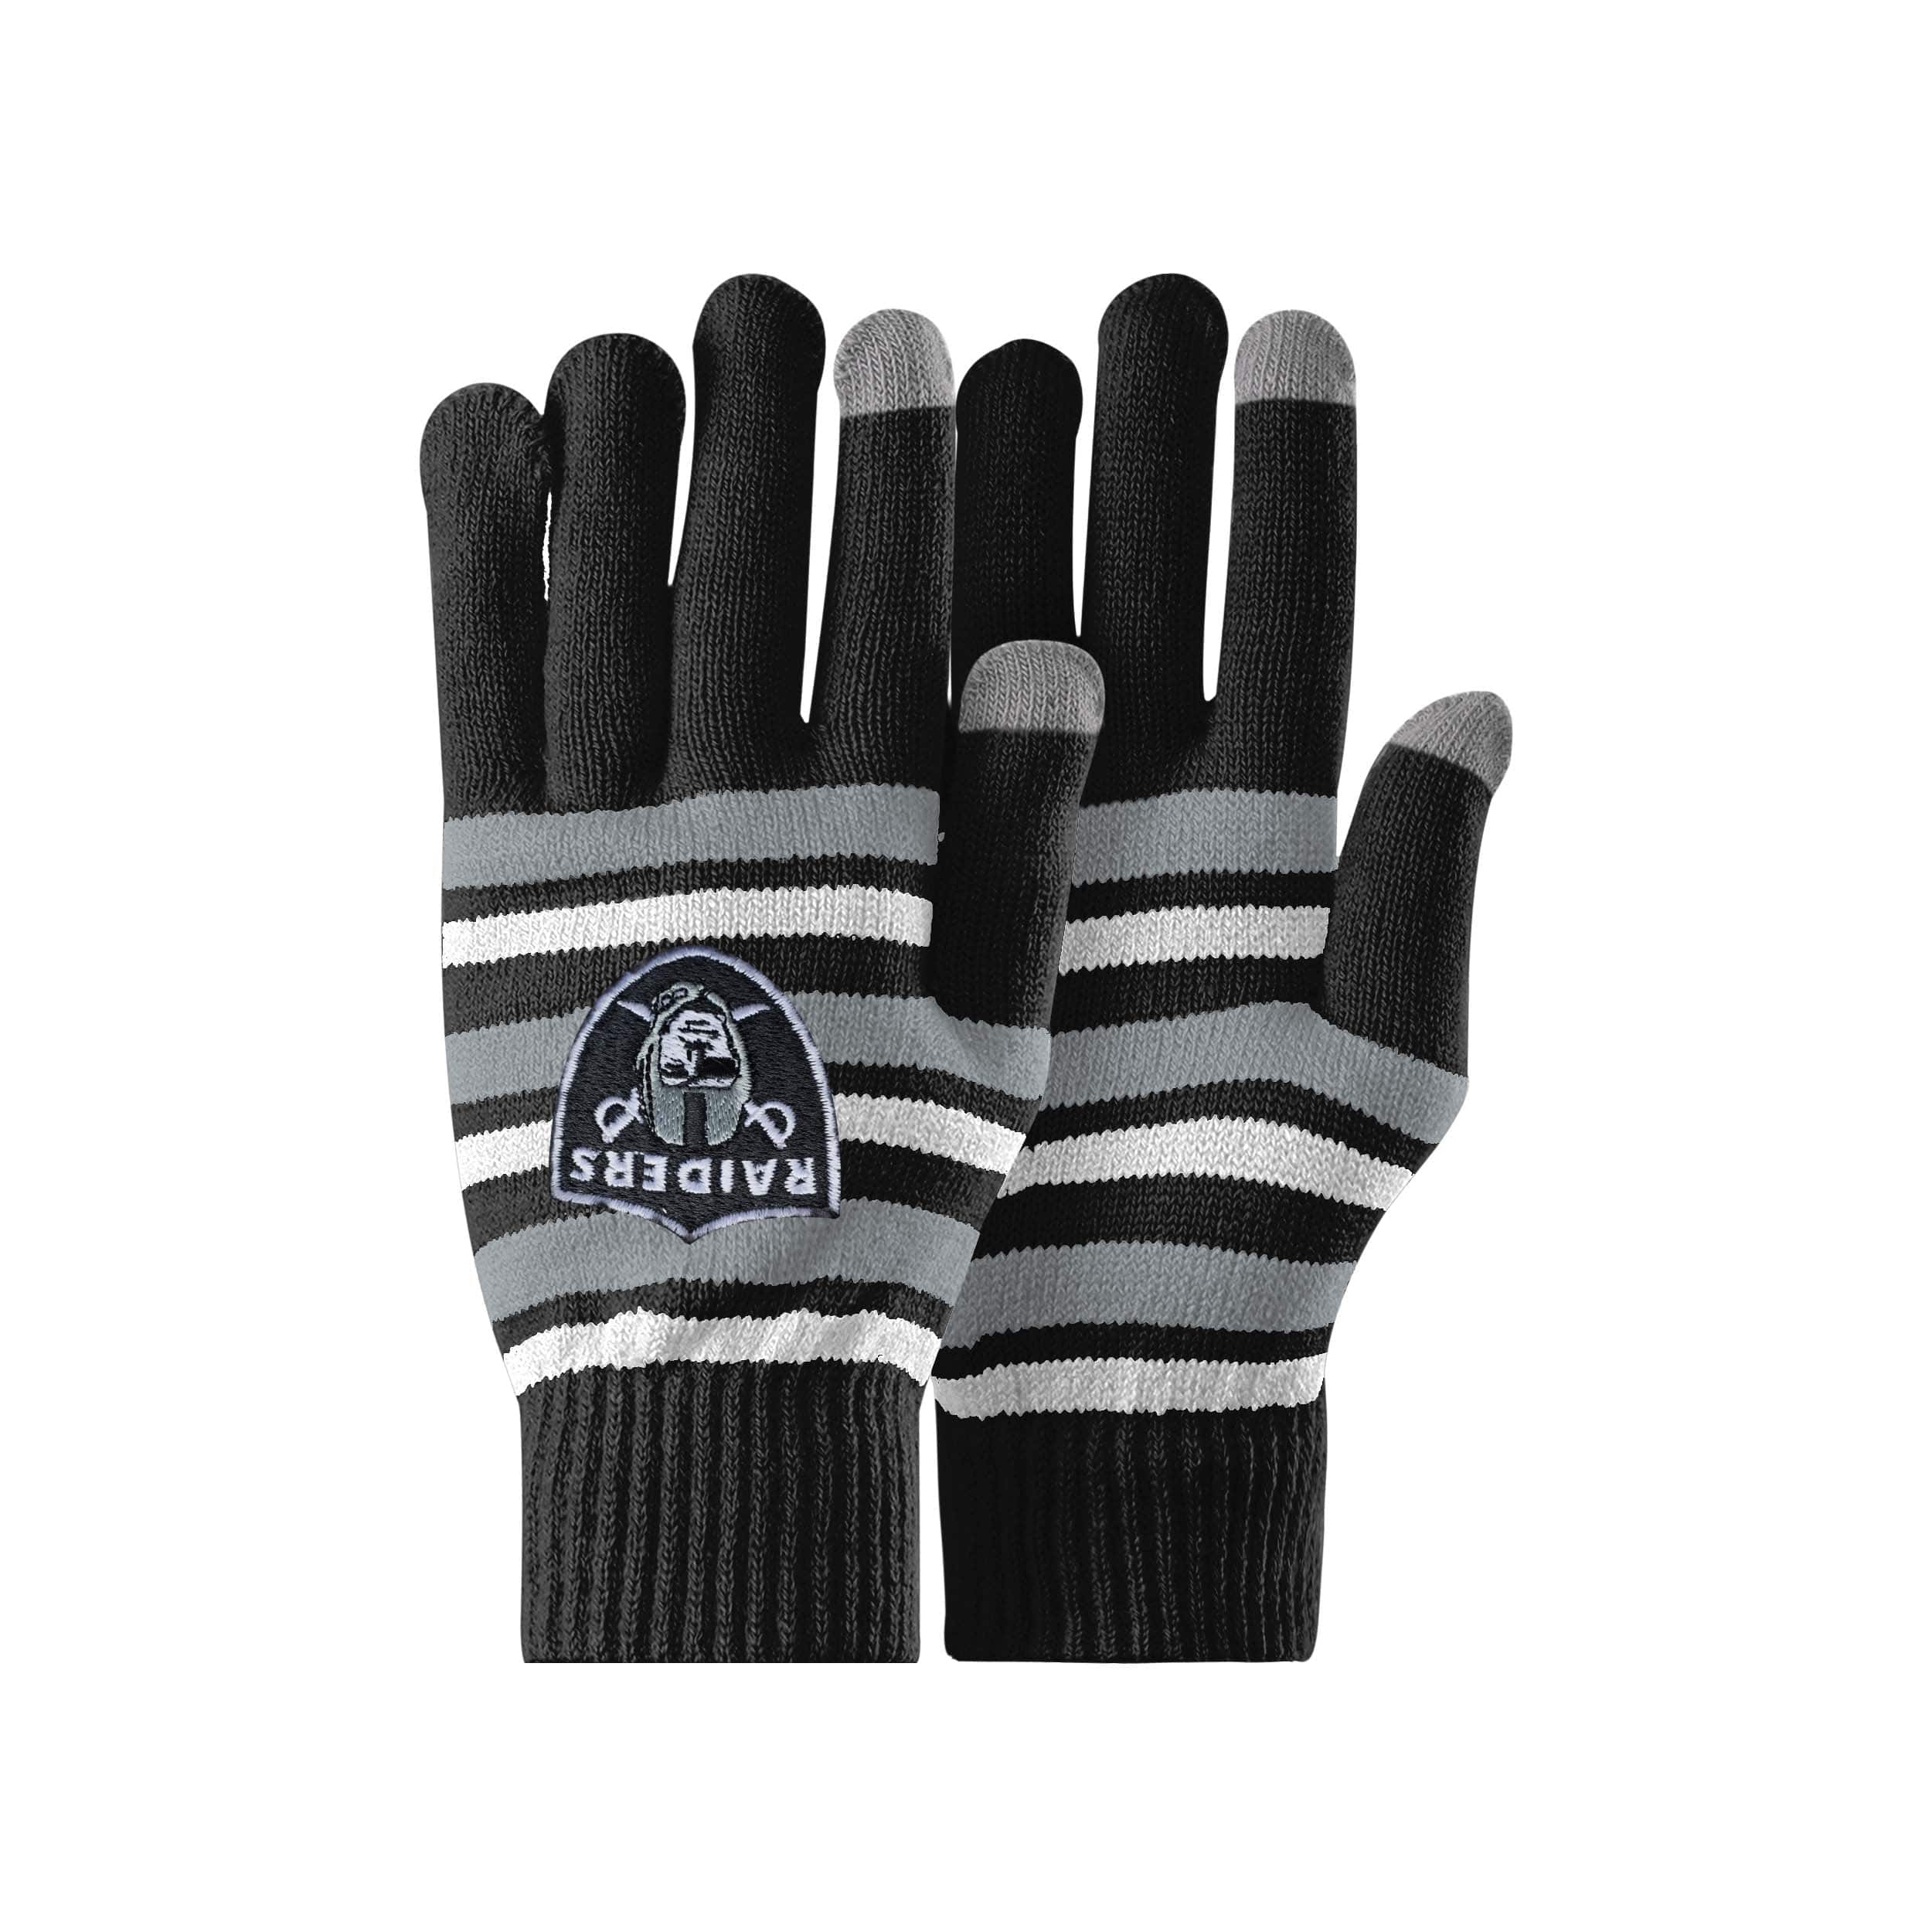 Las Vegas Raiders Texting Gloves